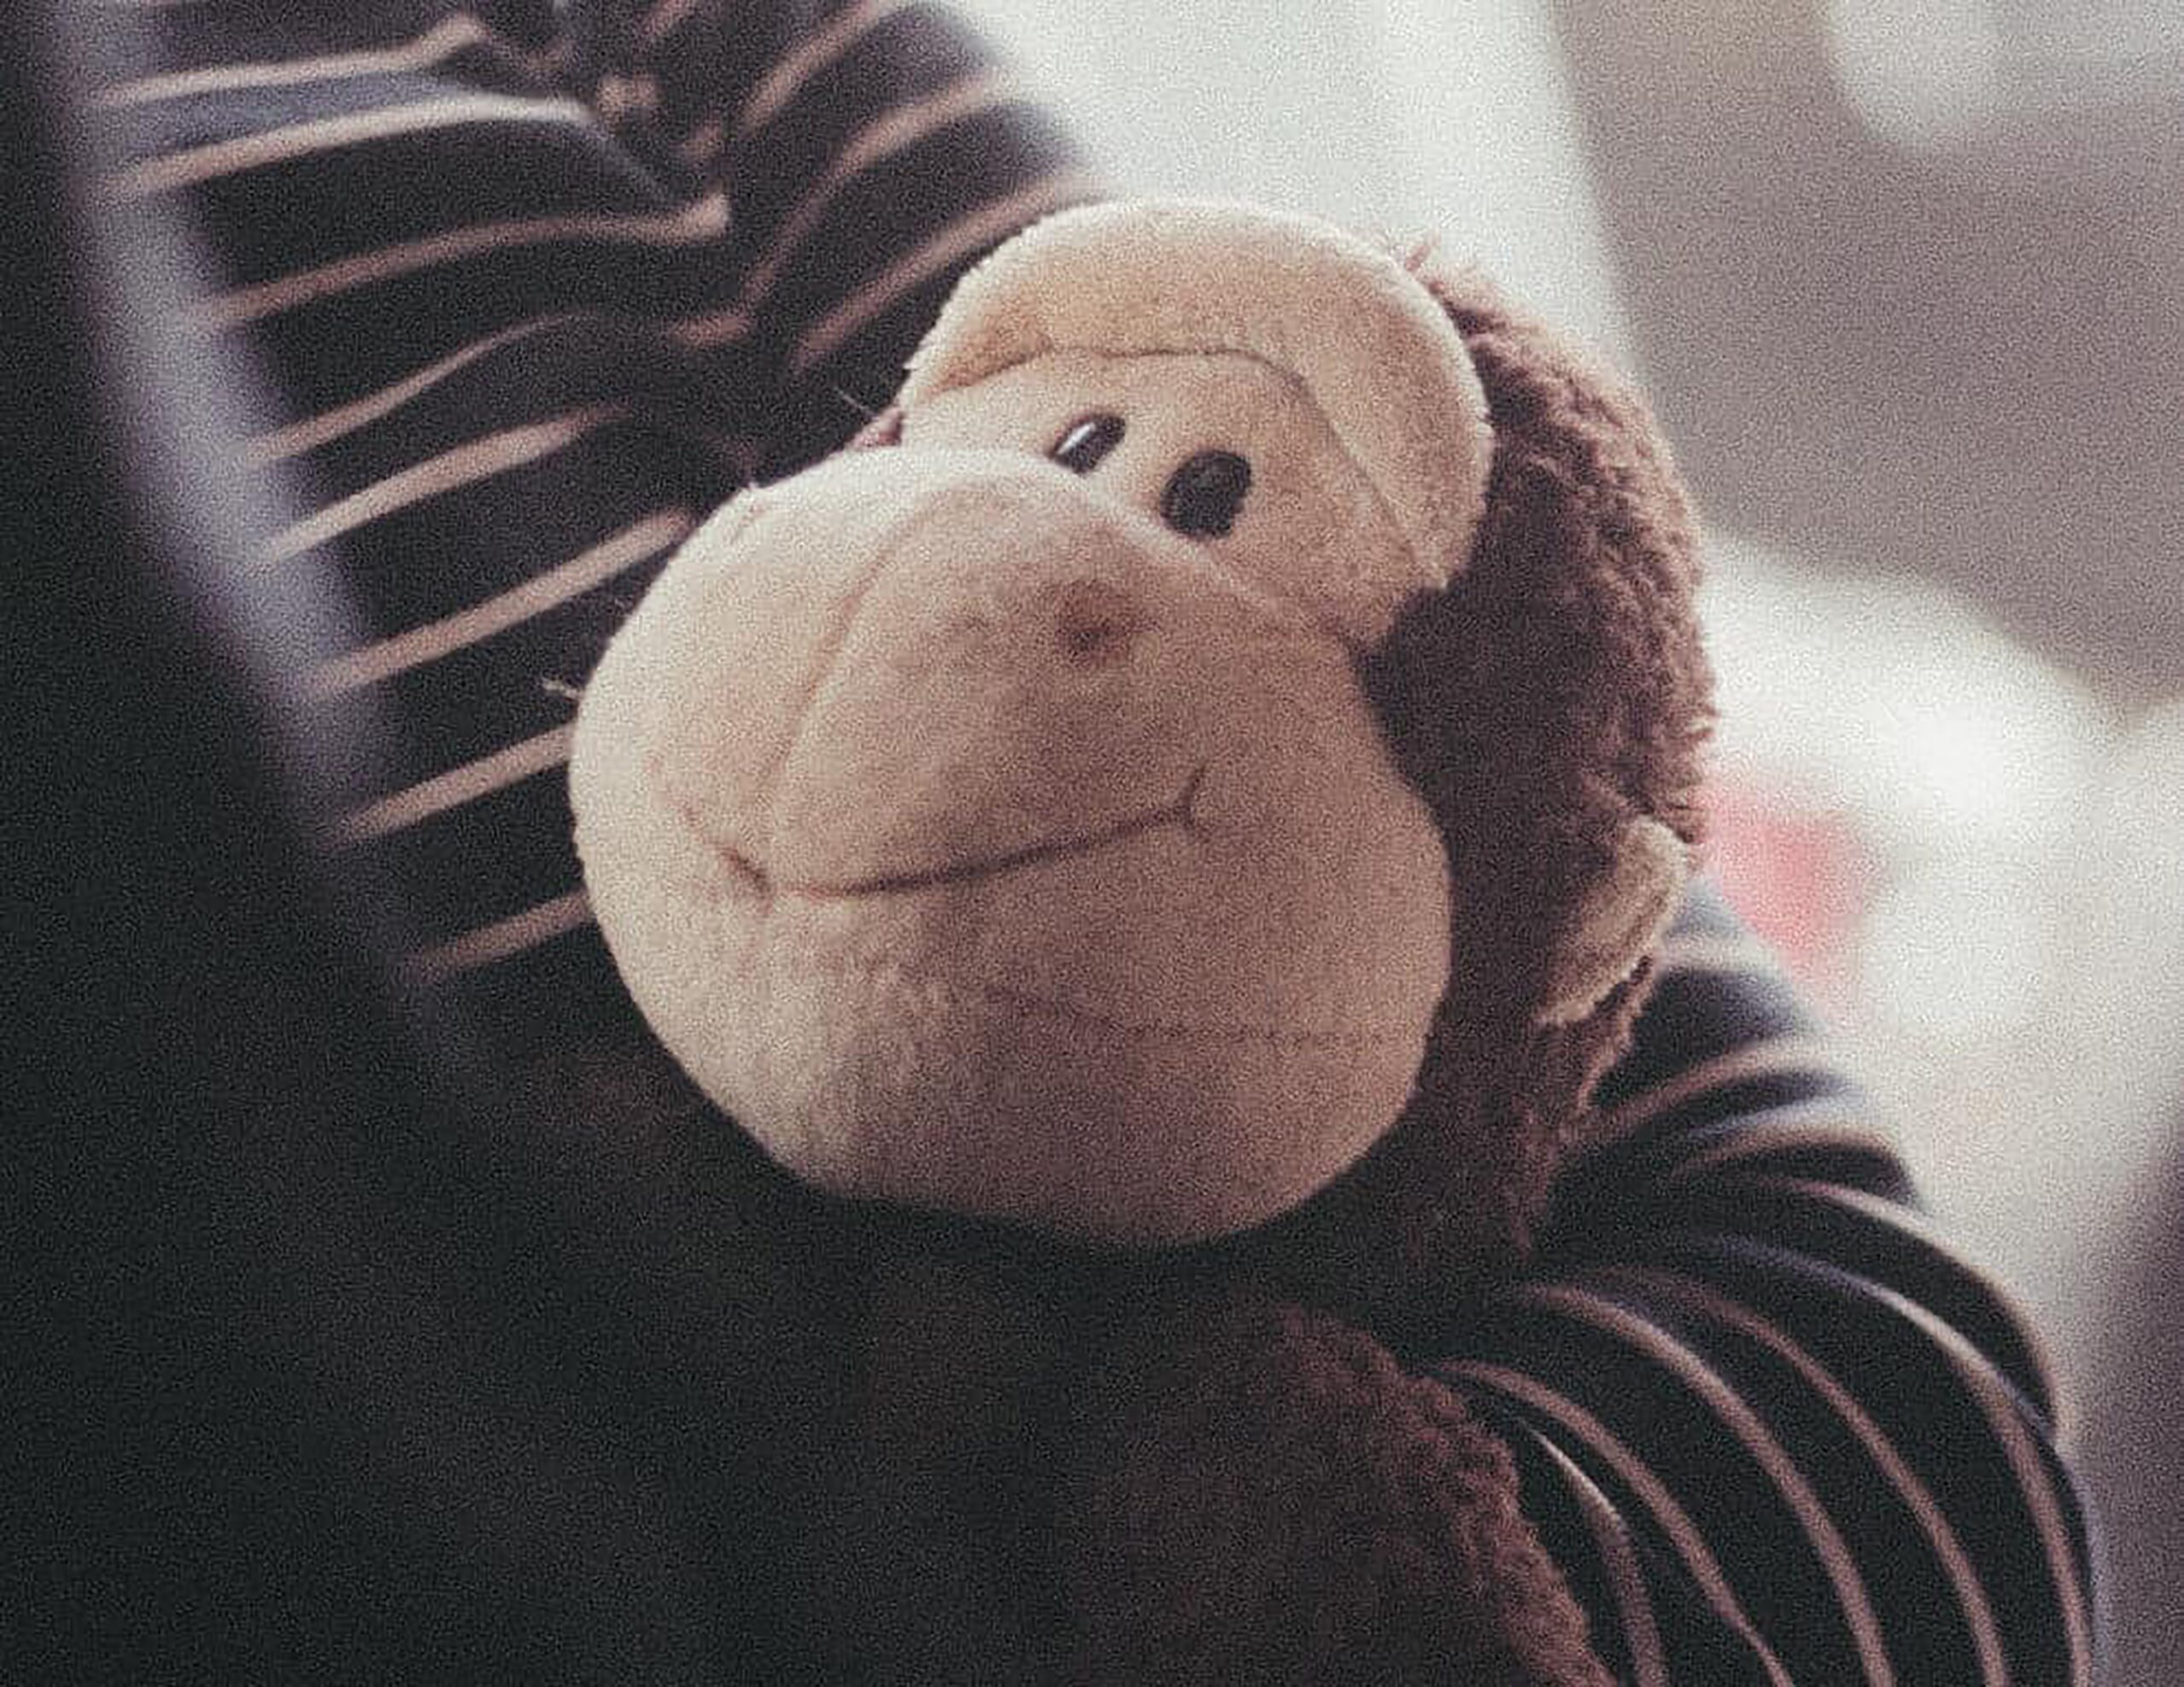 Child holding a stuffed monkey